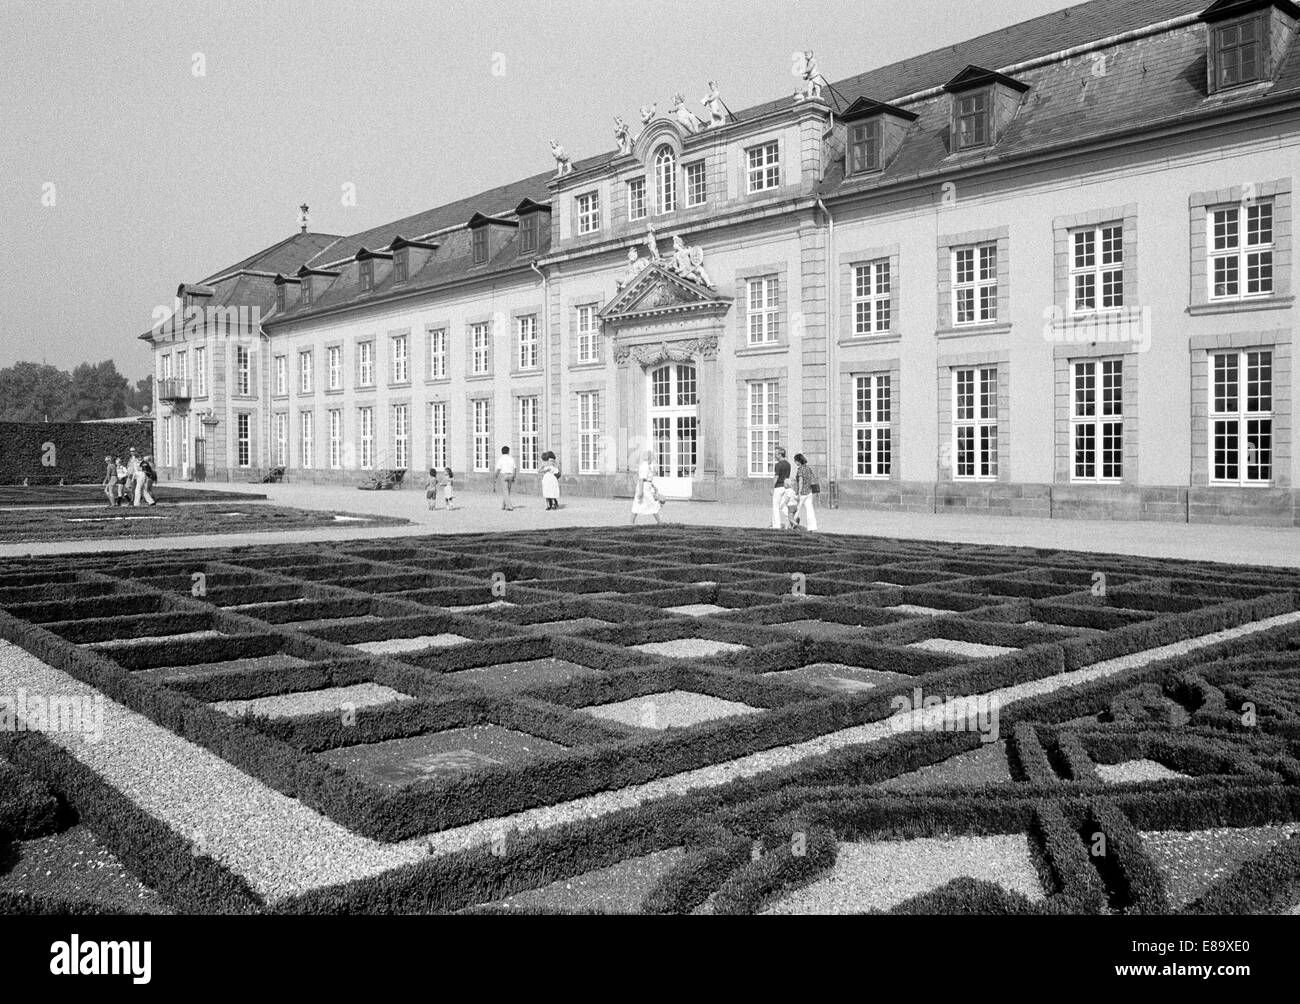 Achtziger Jahre, Galeriegebaeude und Ziergarten, Grosser Garten Herrenhausen in Hannover-Herrenhausen, Niedersachsen Stock Photo